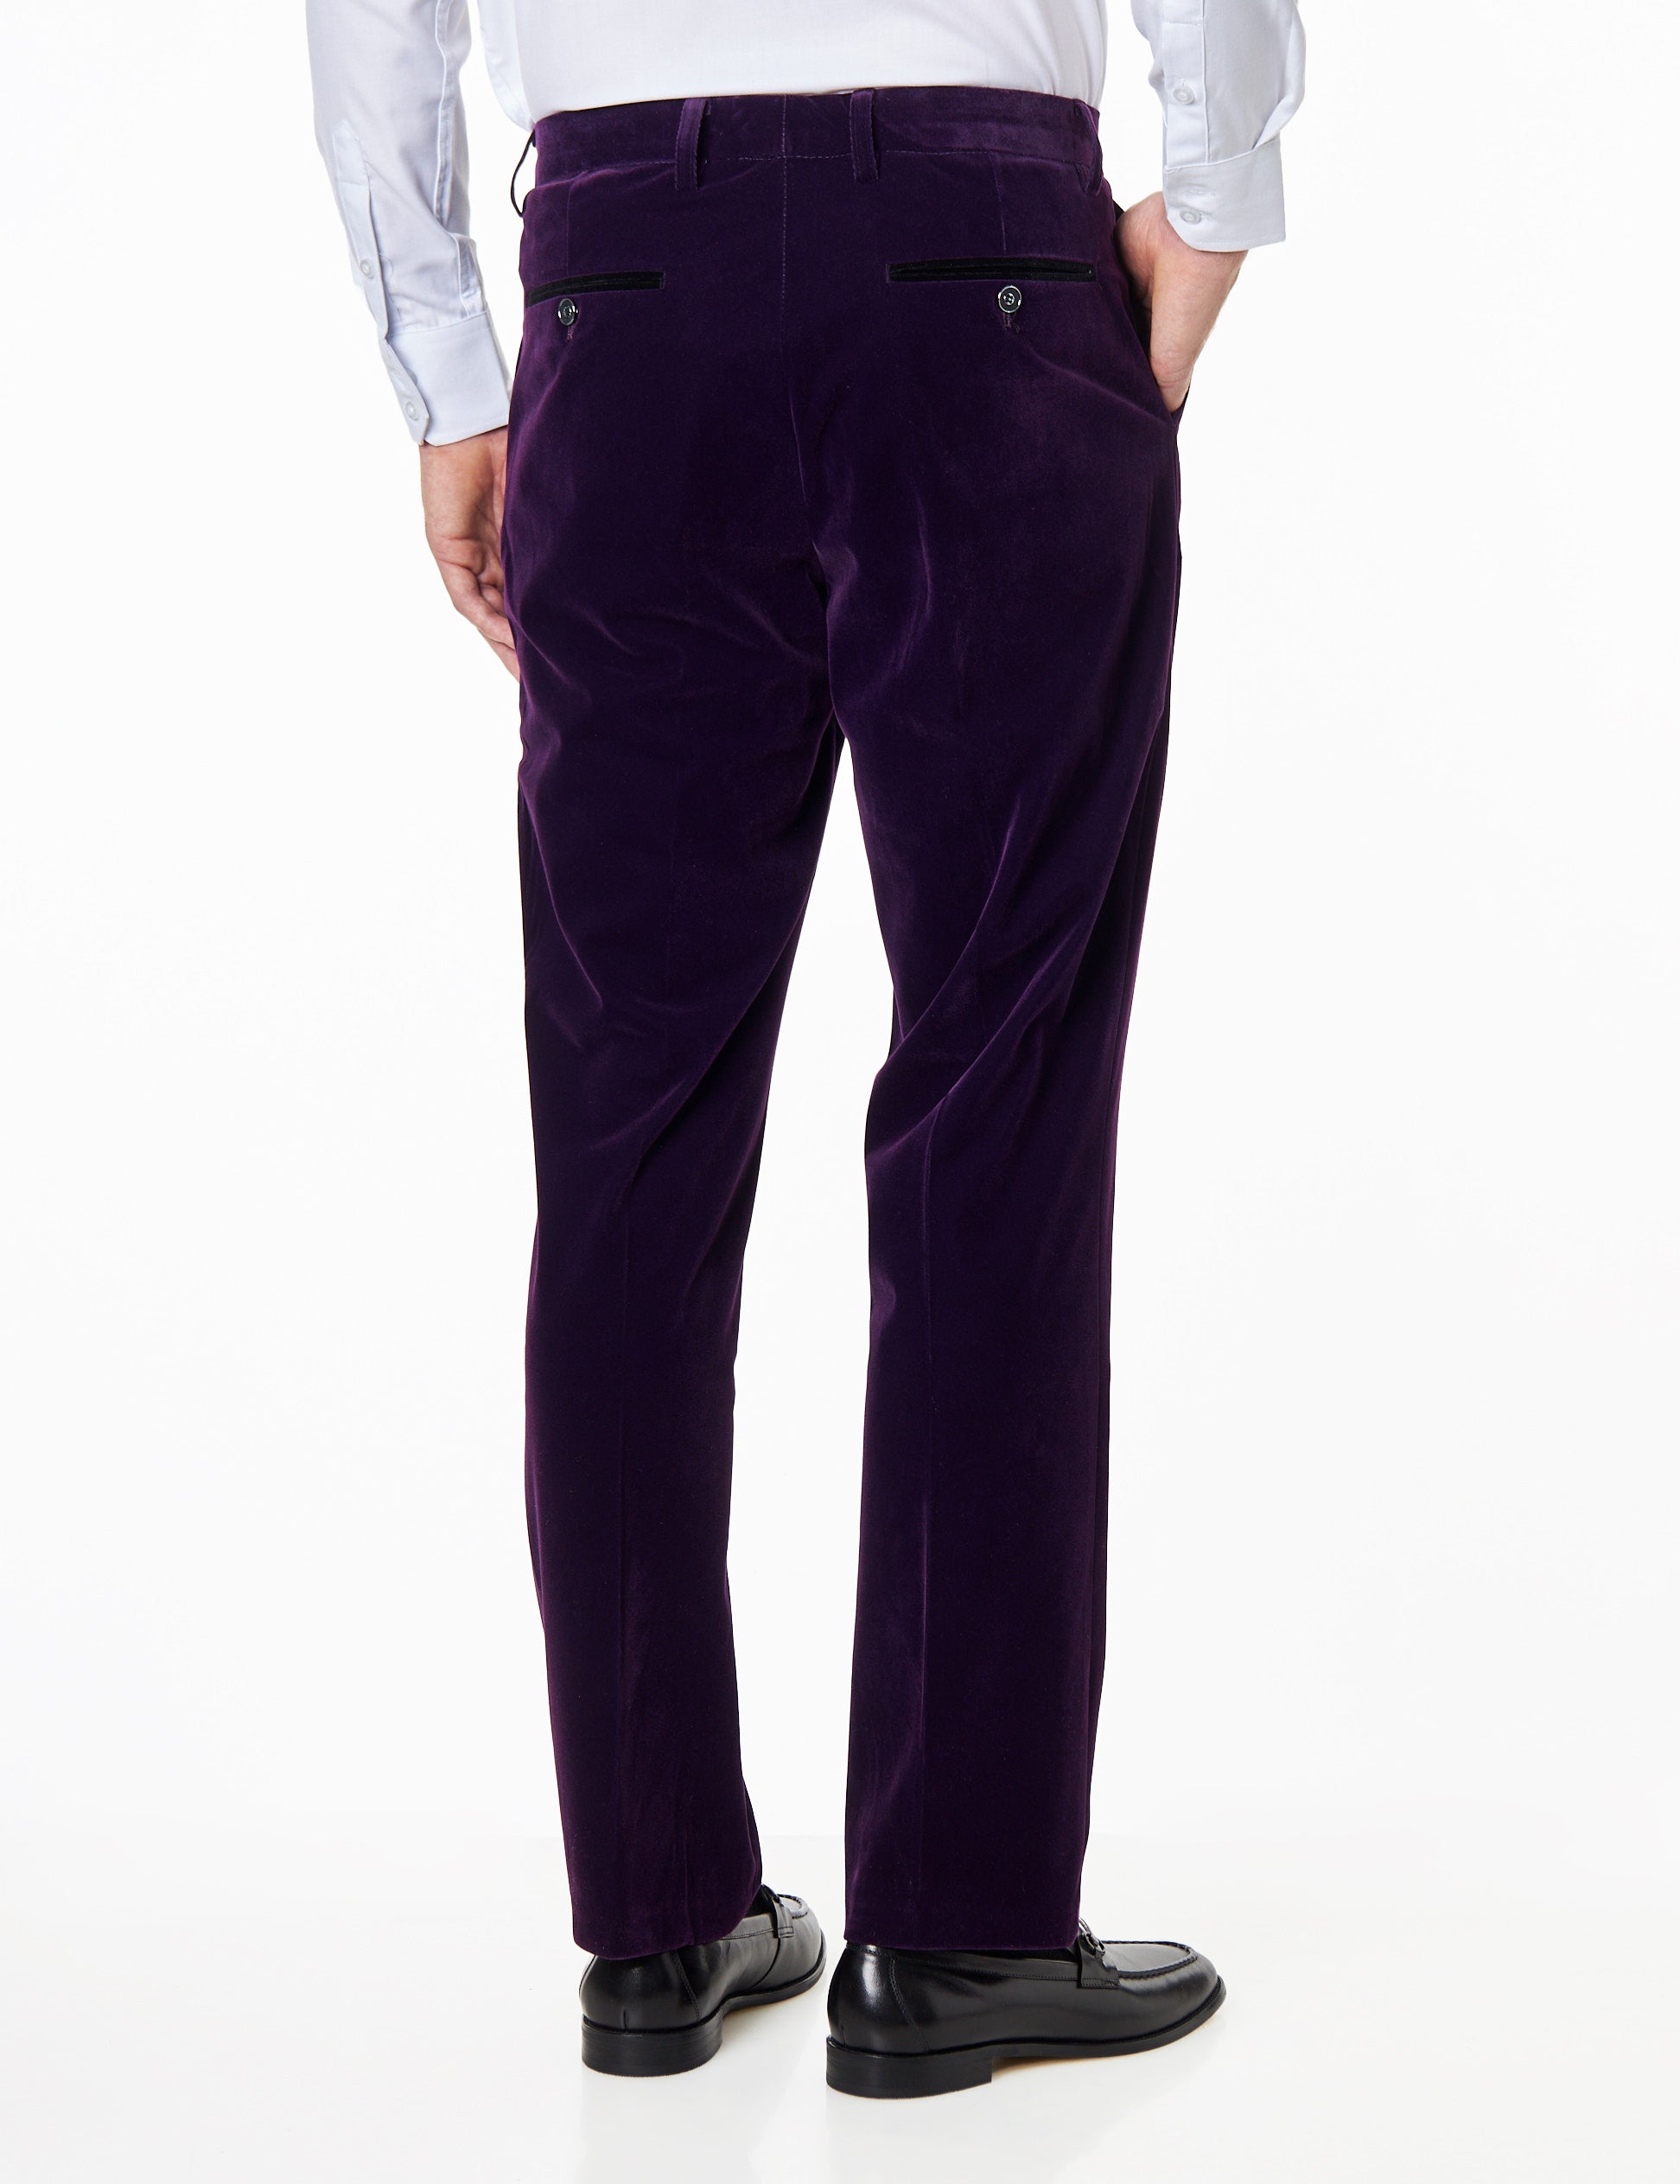 Ricky - Mens Dinner Party Purple Soft Velvet Trousers